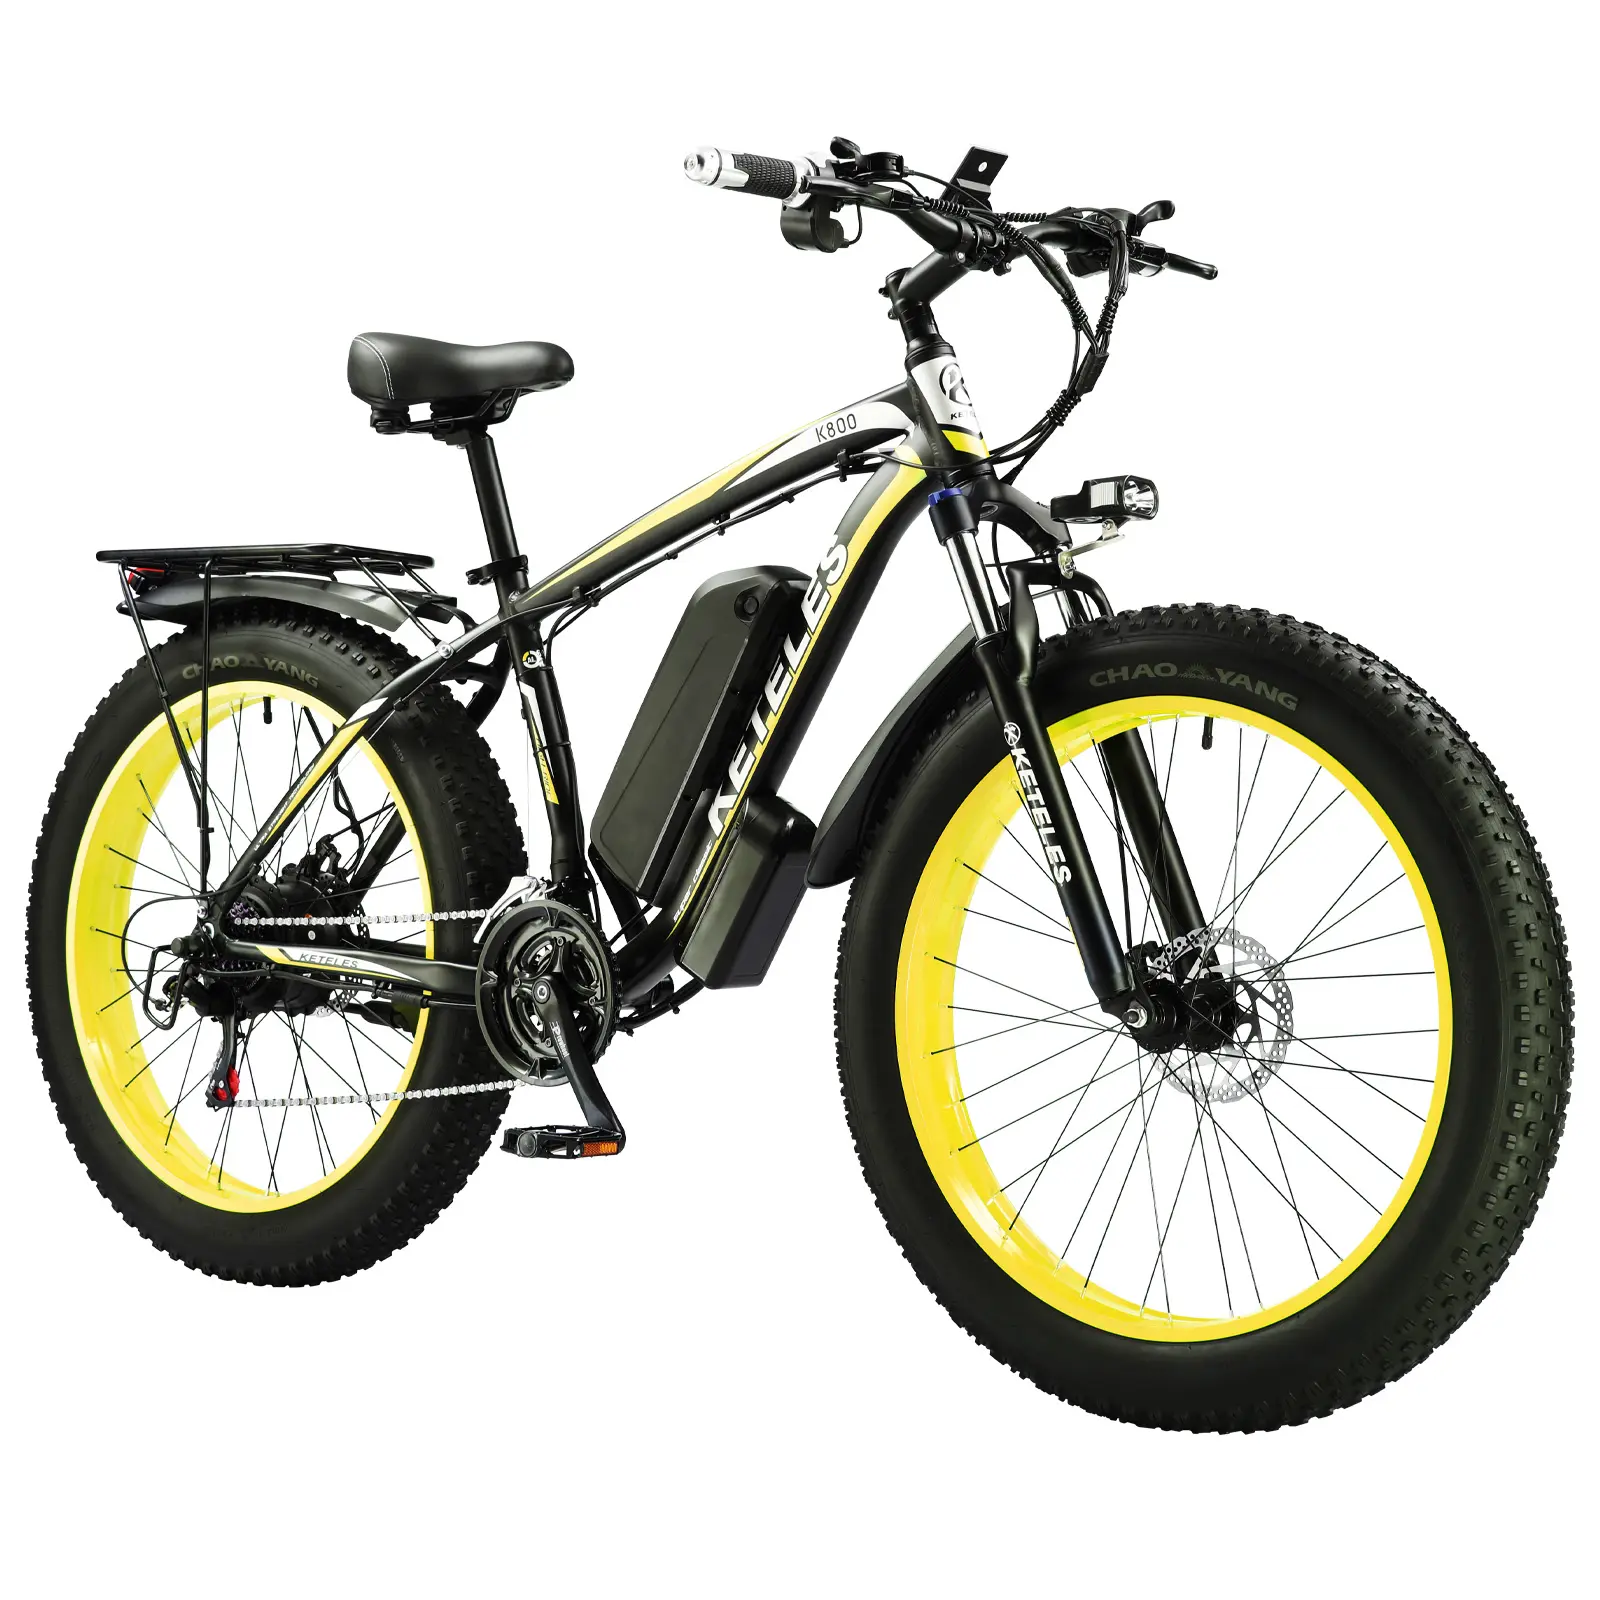 משלוח חינם למחסן ארה""ב משלוח מהיר אופניים חשמליים עם מנוע 1000W 13AH סוללה אופניים חשמליים שמן 26 אינץ' אופניים חשמליים צמיג שמן